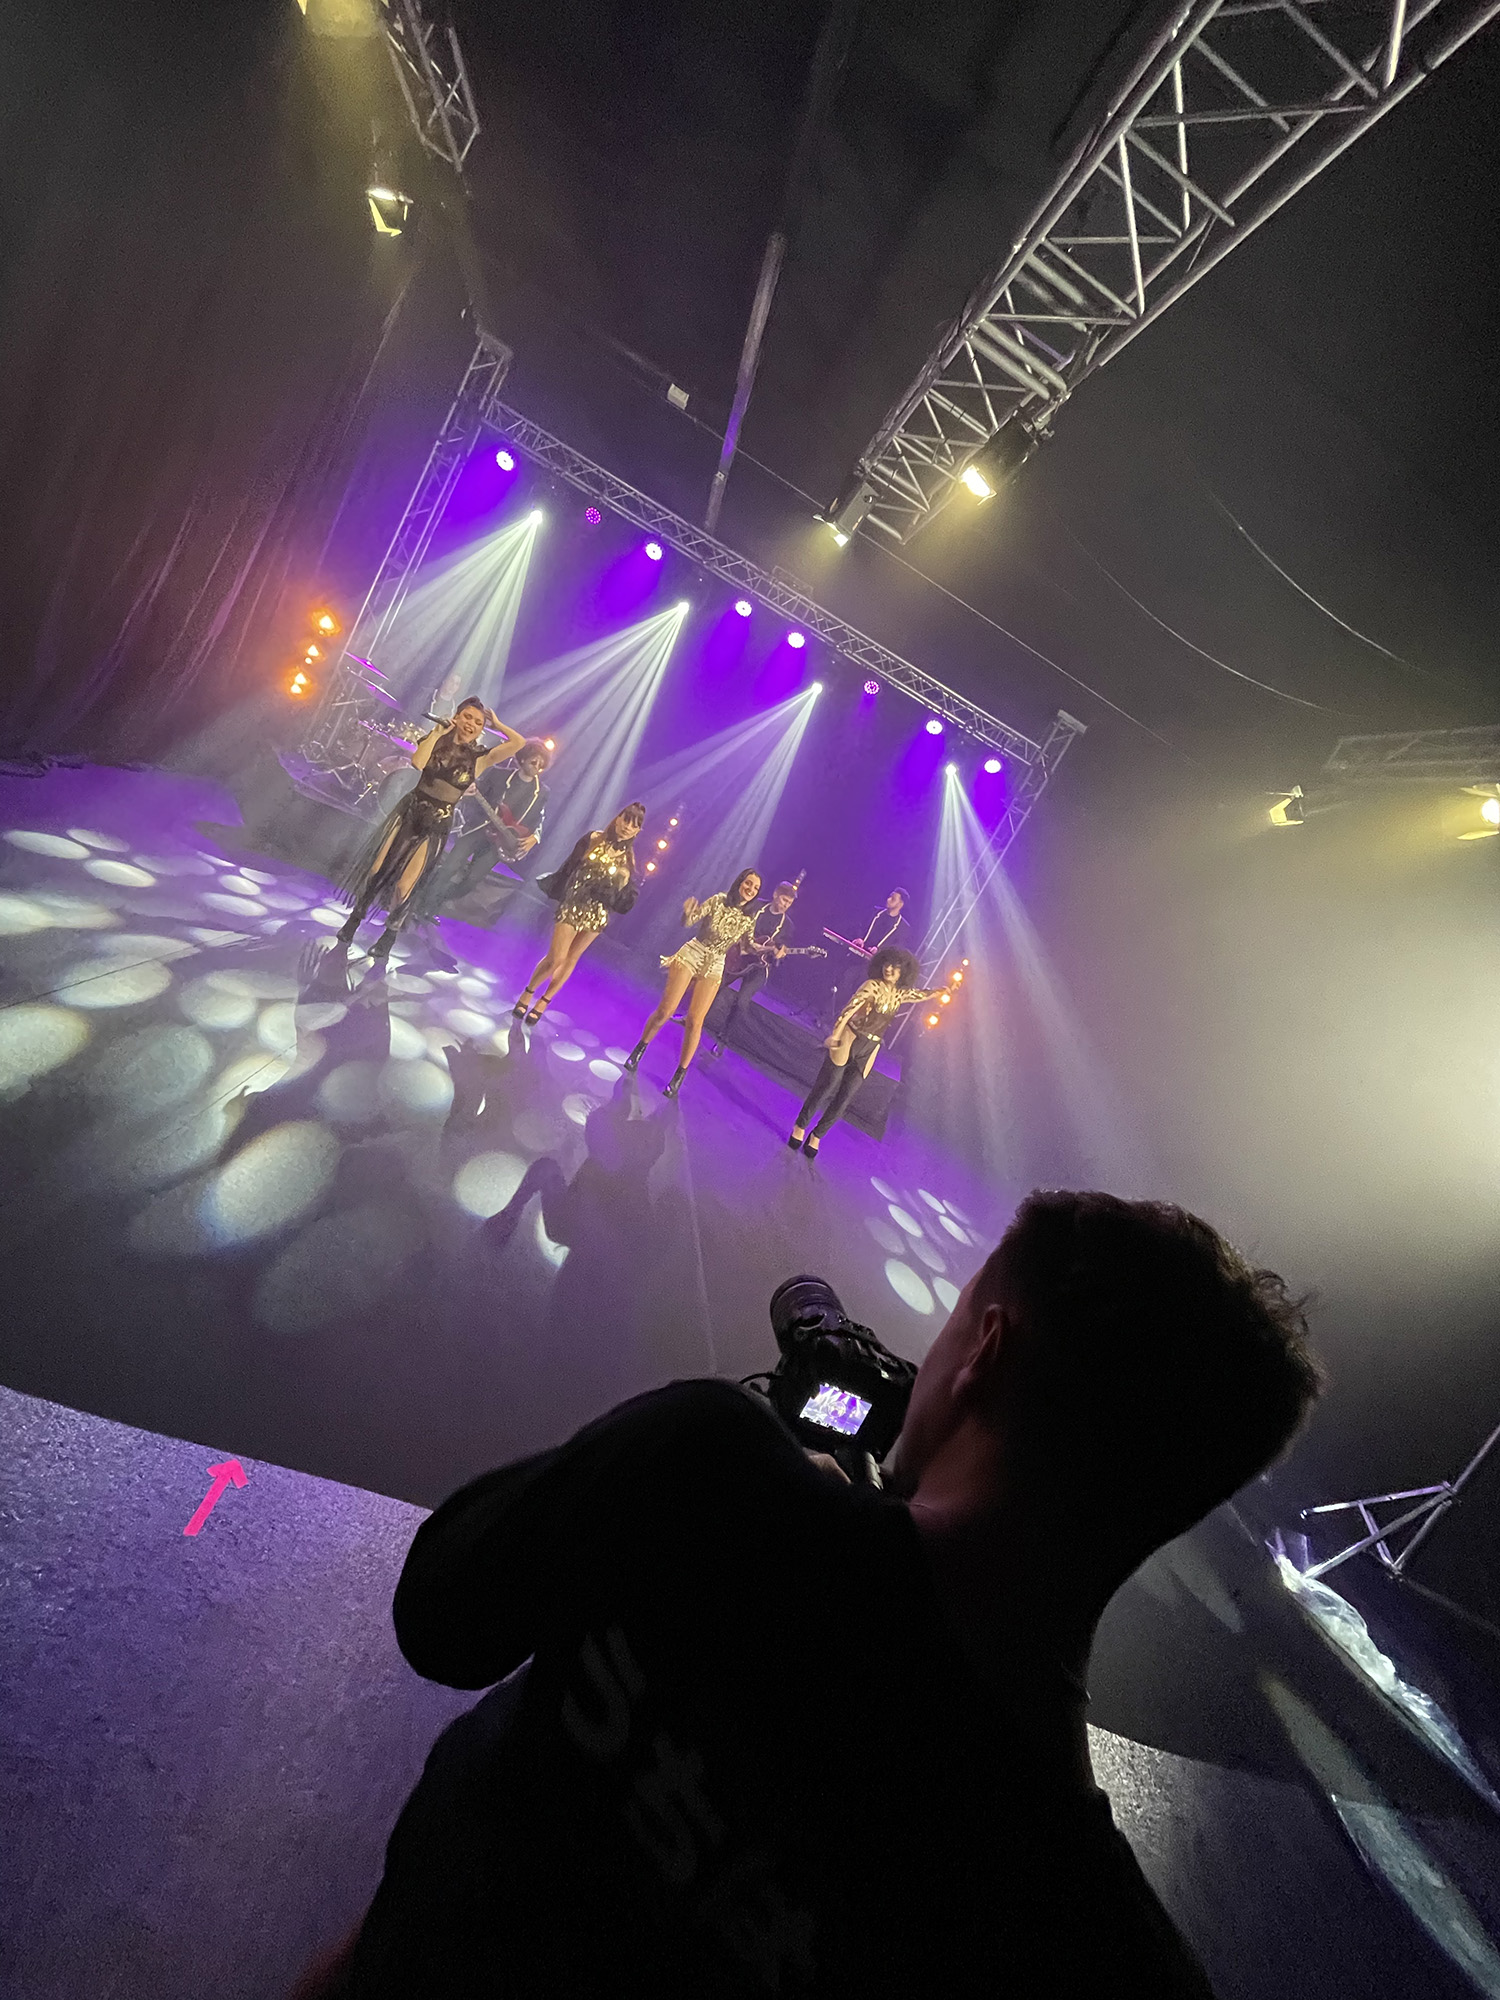 Videografo grabando el vidoclip de unas cantantes en un stage